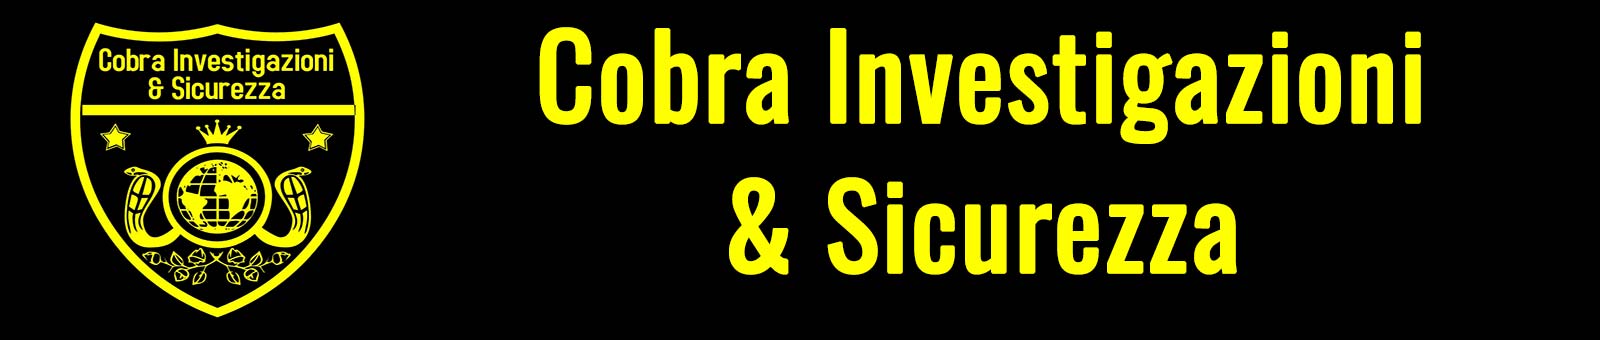 Investigatore Cobra